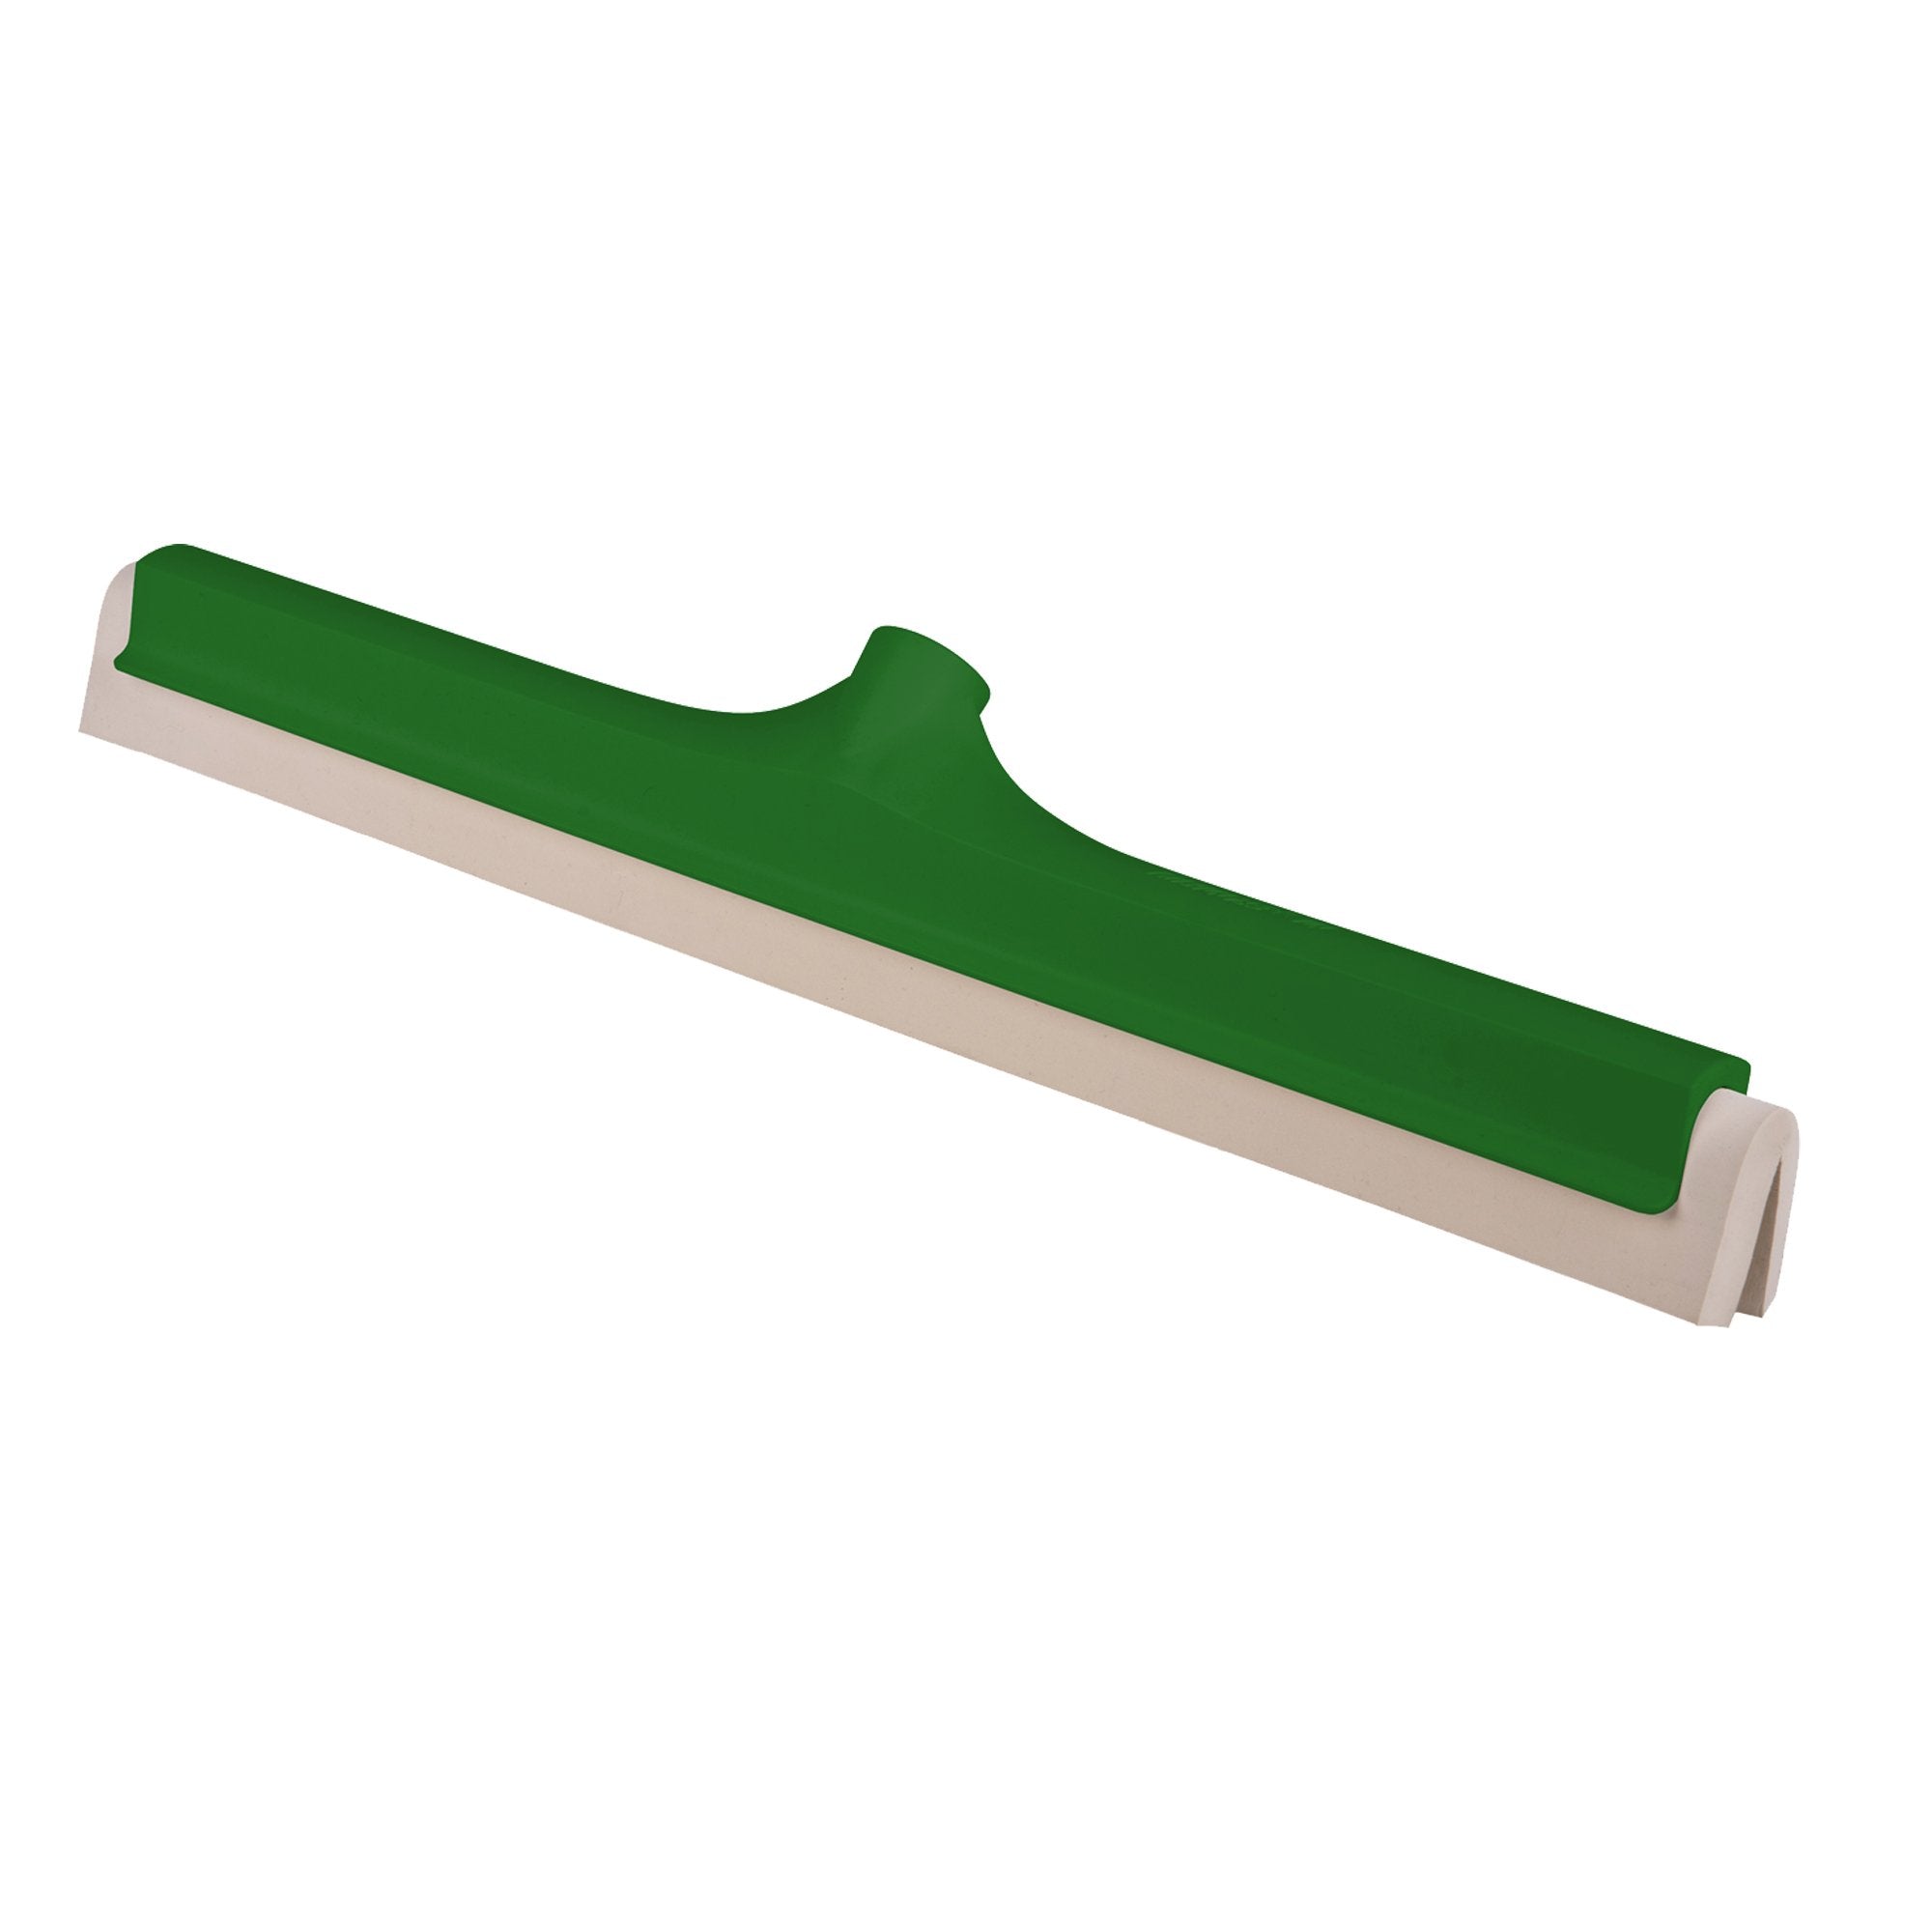 la-briantina-professional-spingiacqua-45cm-haccp-colore-verde